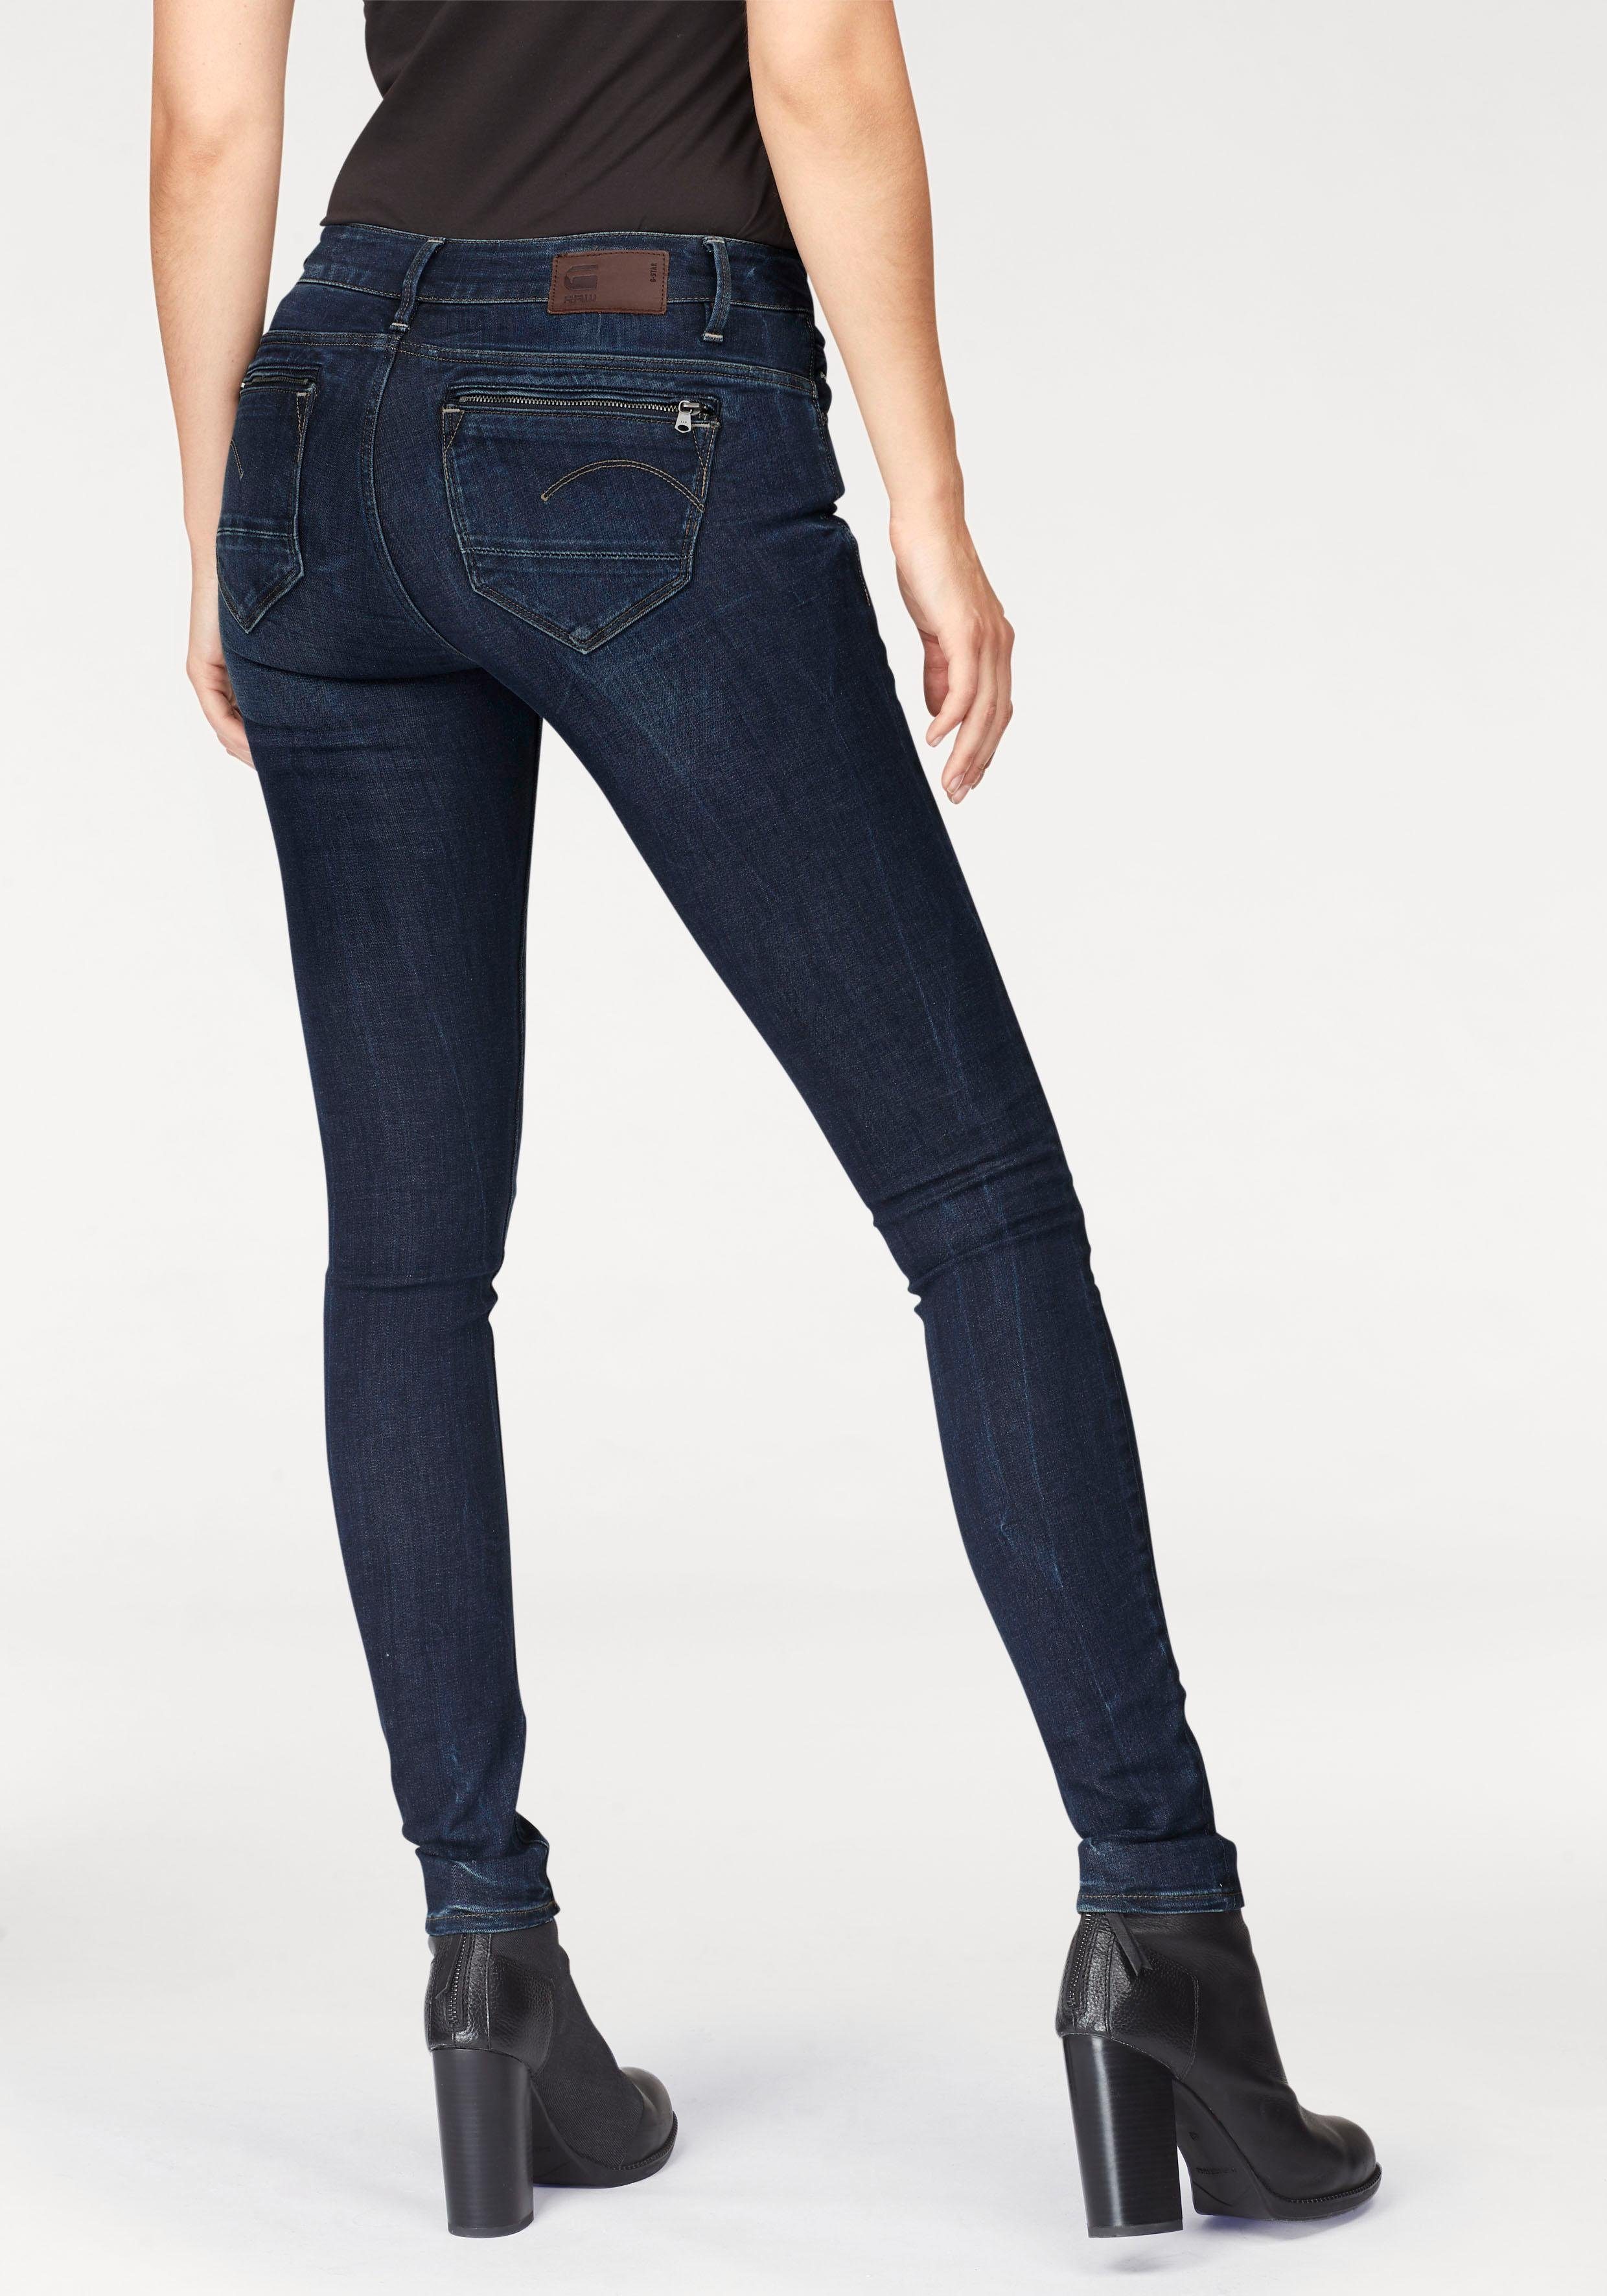 Reißverschluss-Taschen mit RAW G-Star Midge Skinny-fit-Jeans hinten Zip